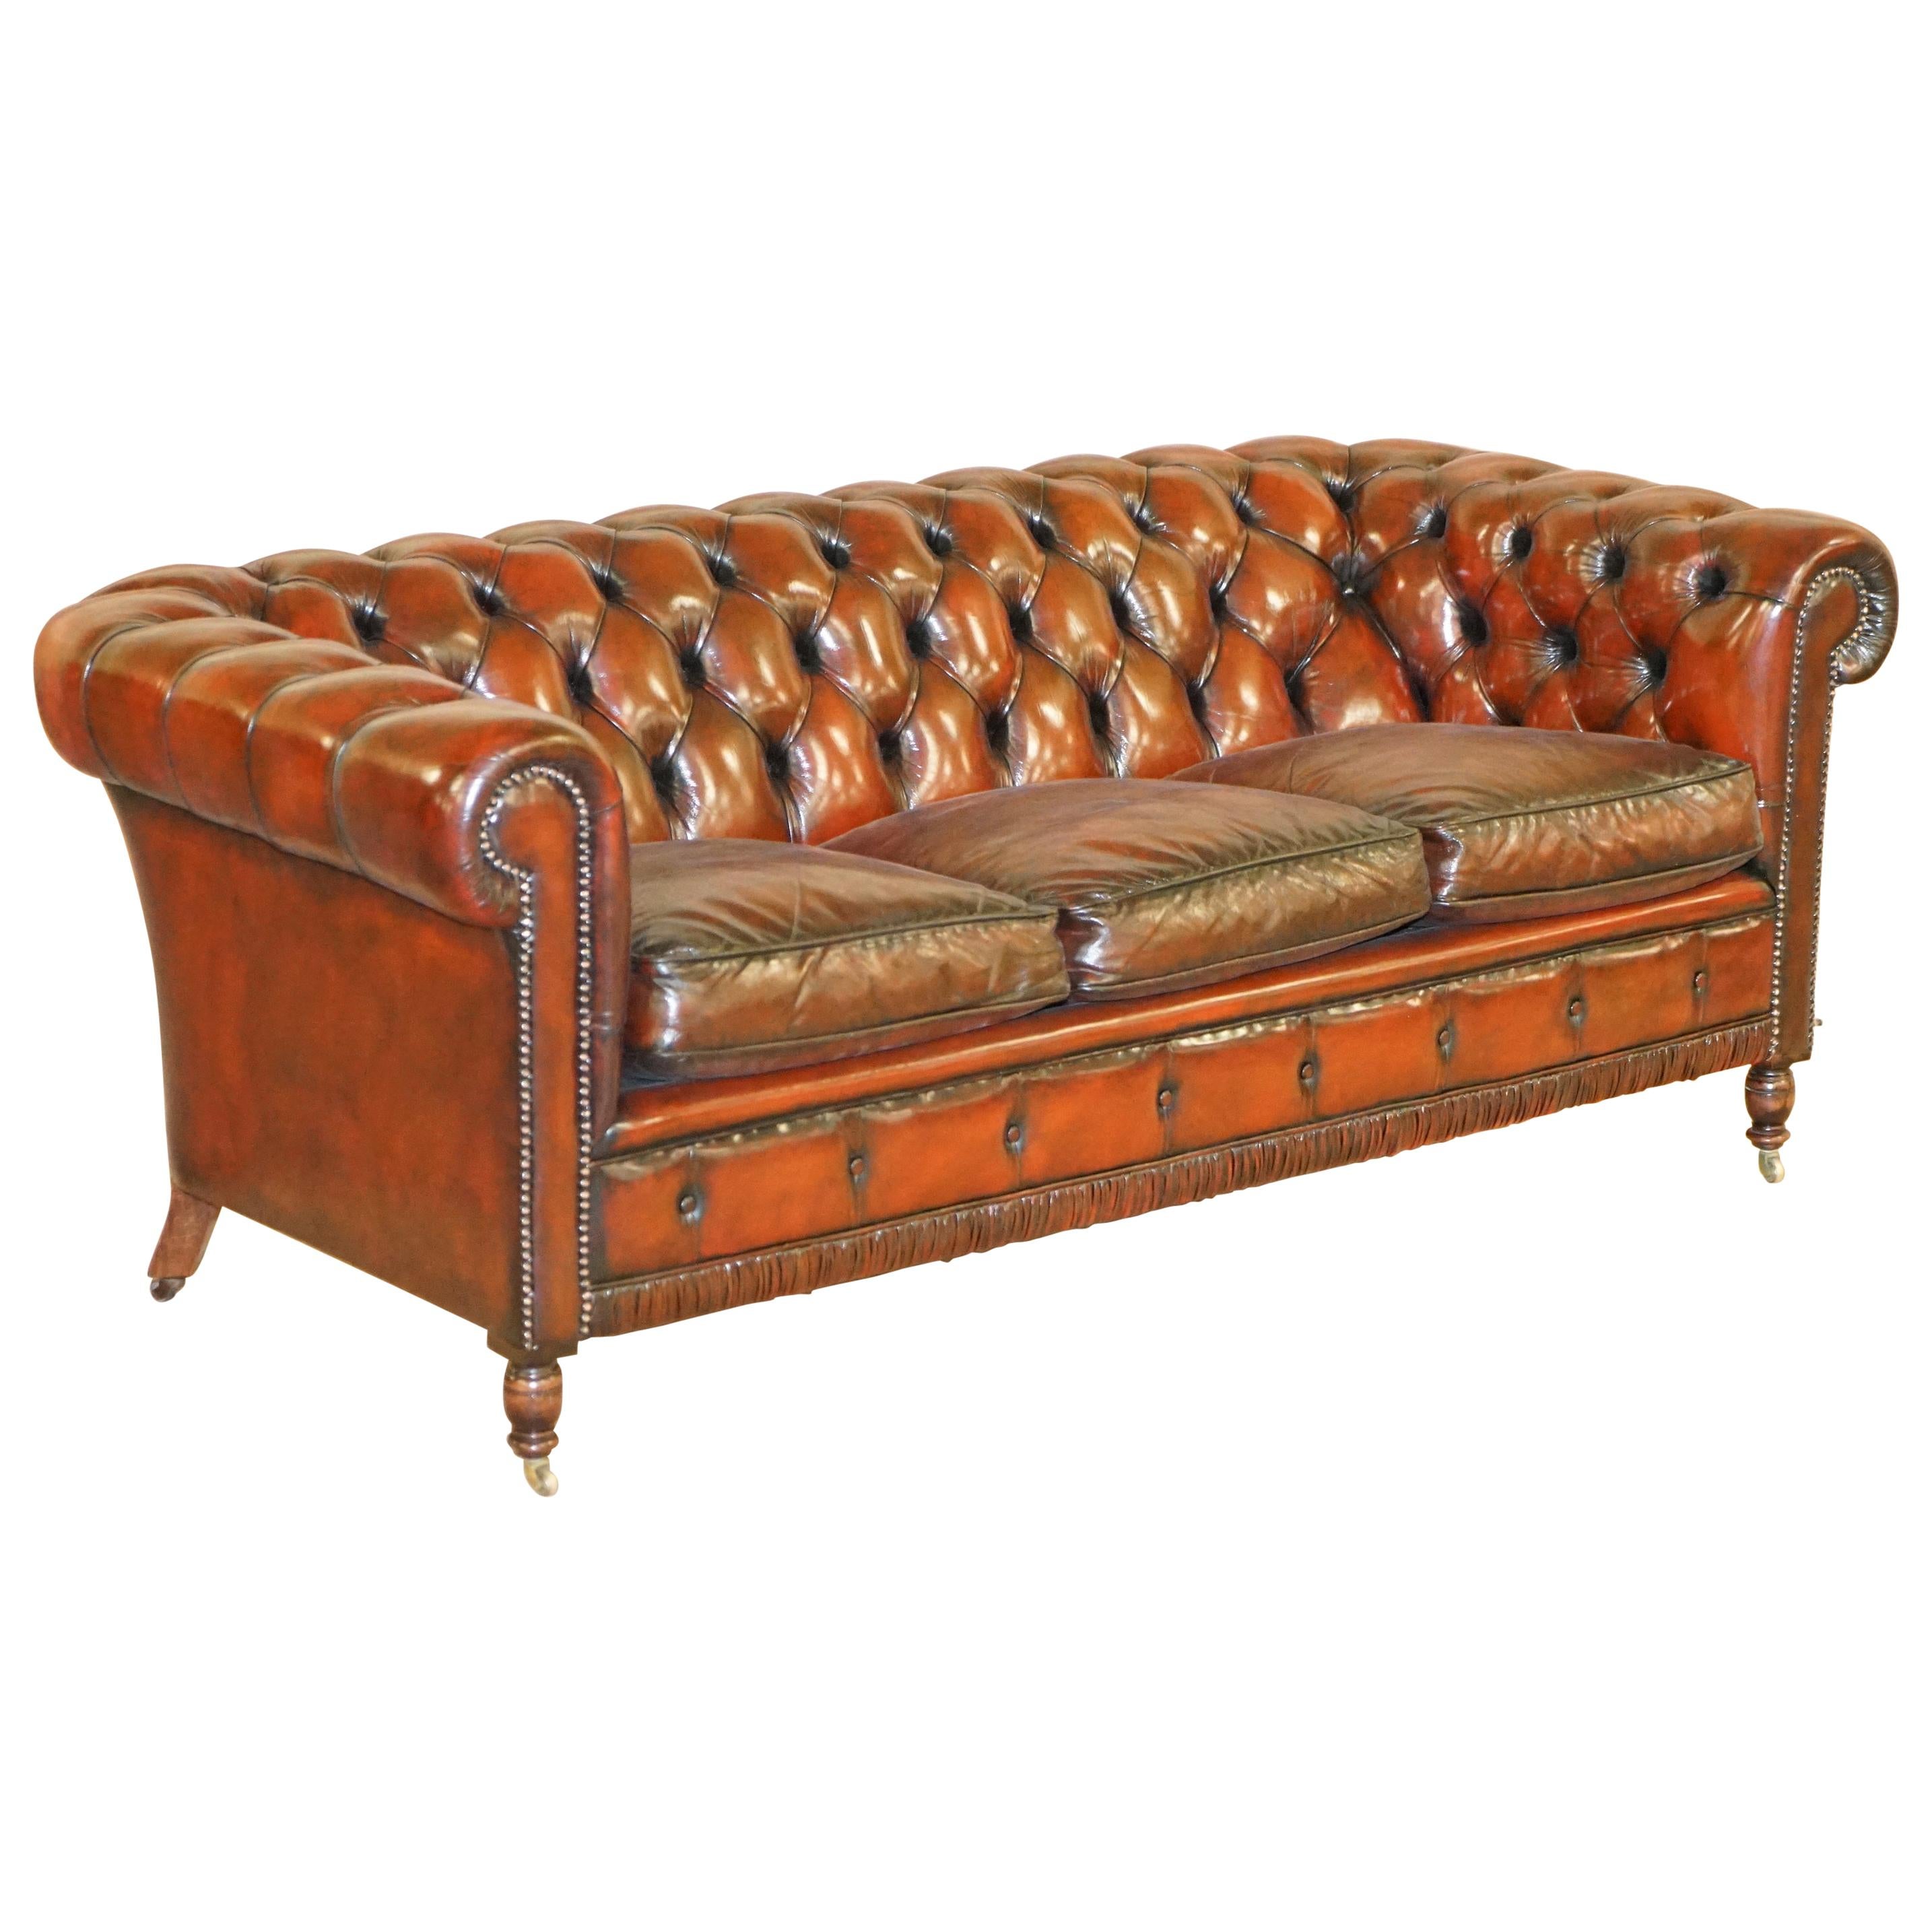 Restauriertes Vintage Oxblood Chesterfield Club Sofa aus bordeauxfarbenem Leder auf gedrechselten Beinen